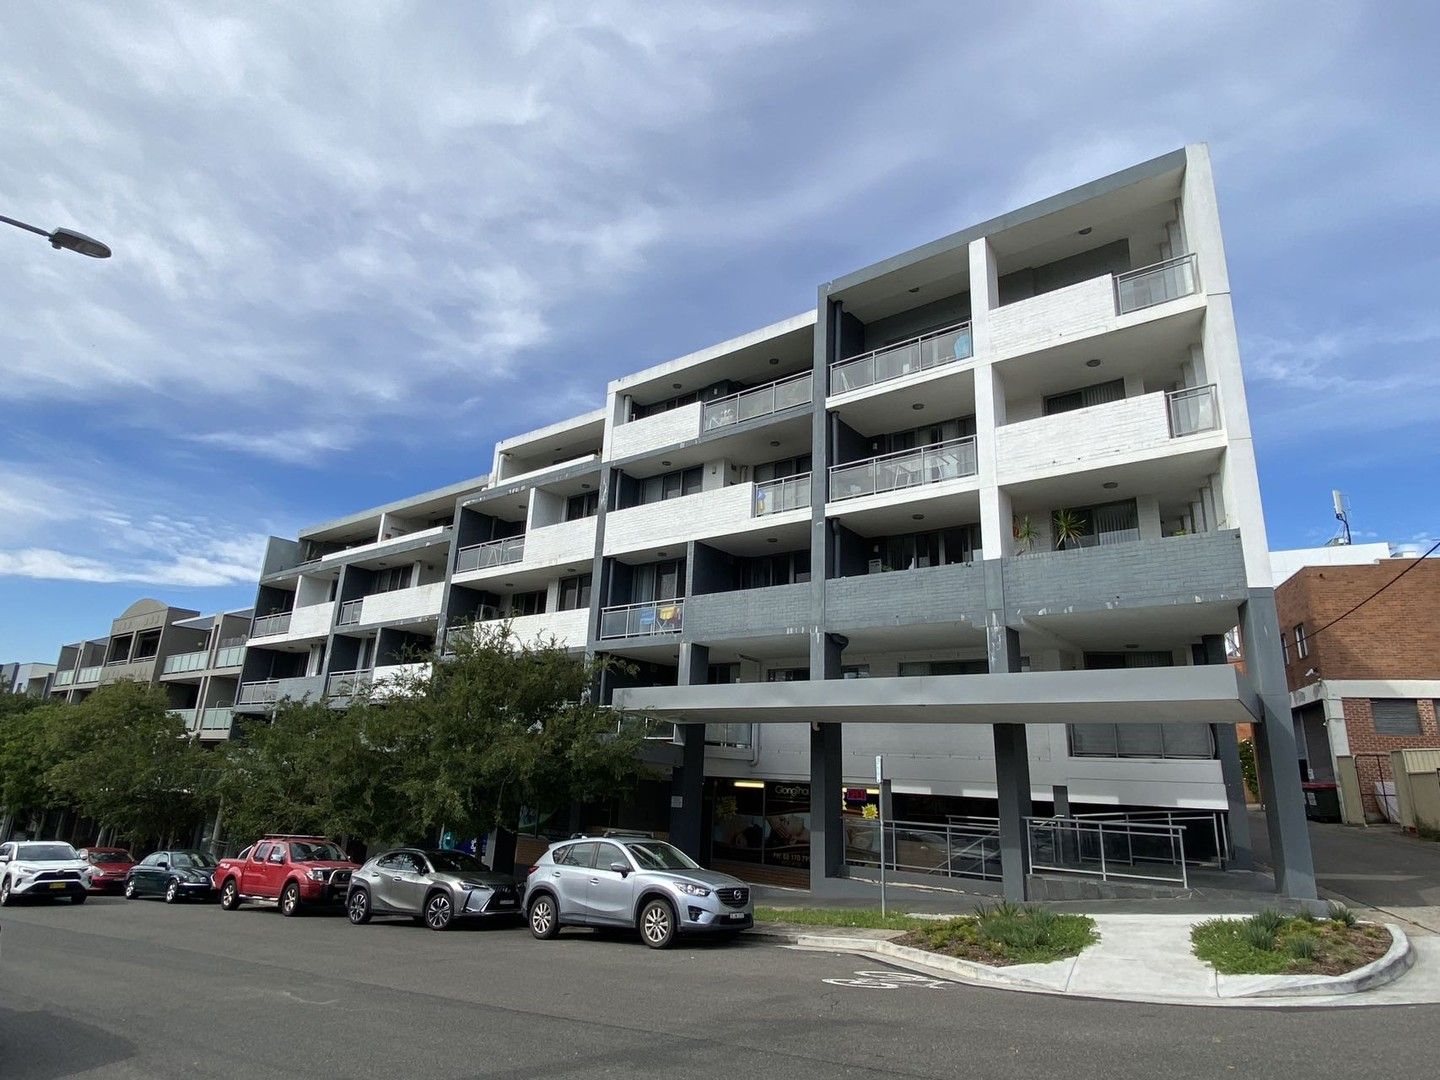 3 bedrooms Apartment / Unit / Flat in 12/34-36 Herbert Street WEST RYDE NSW, 2114